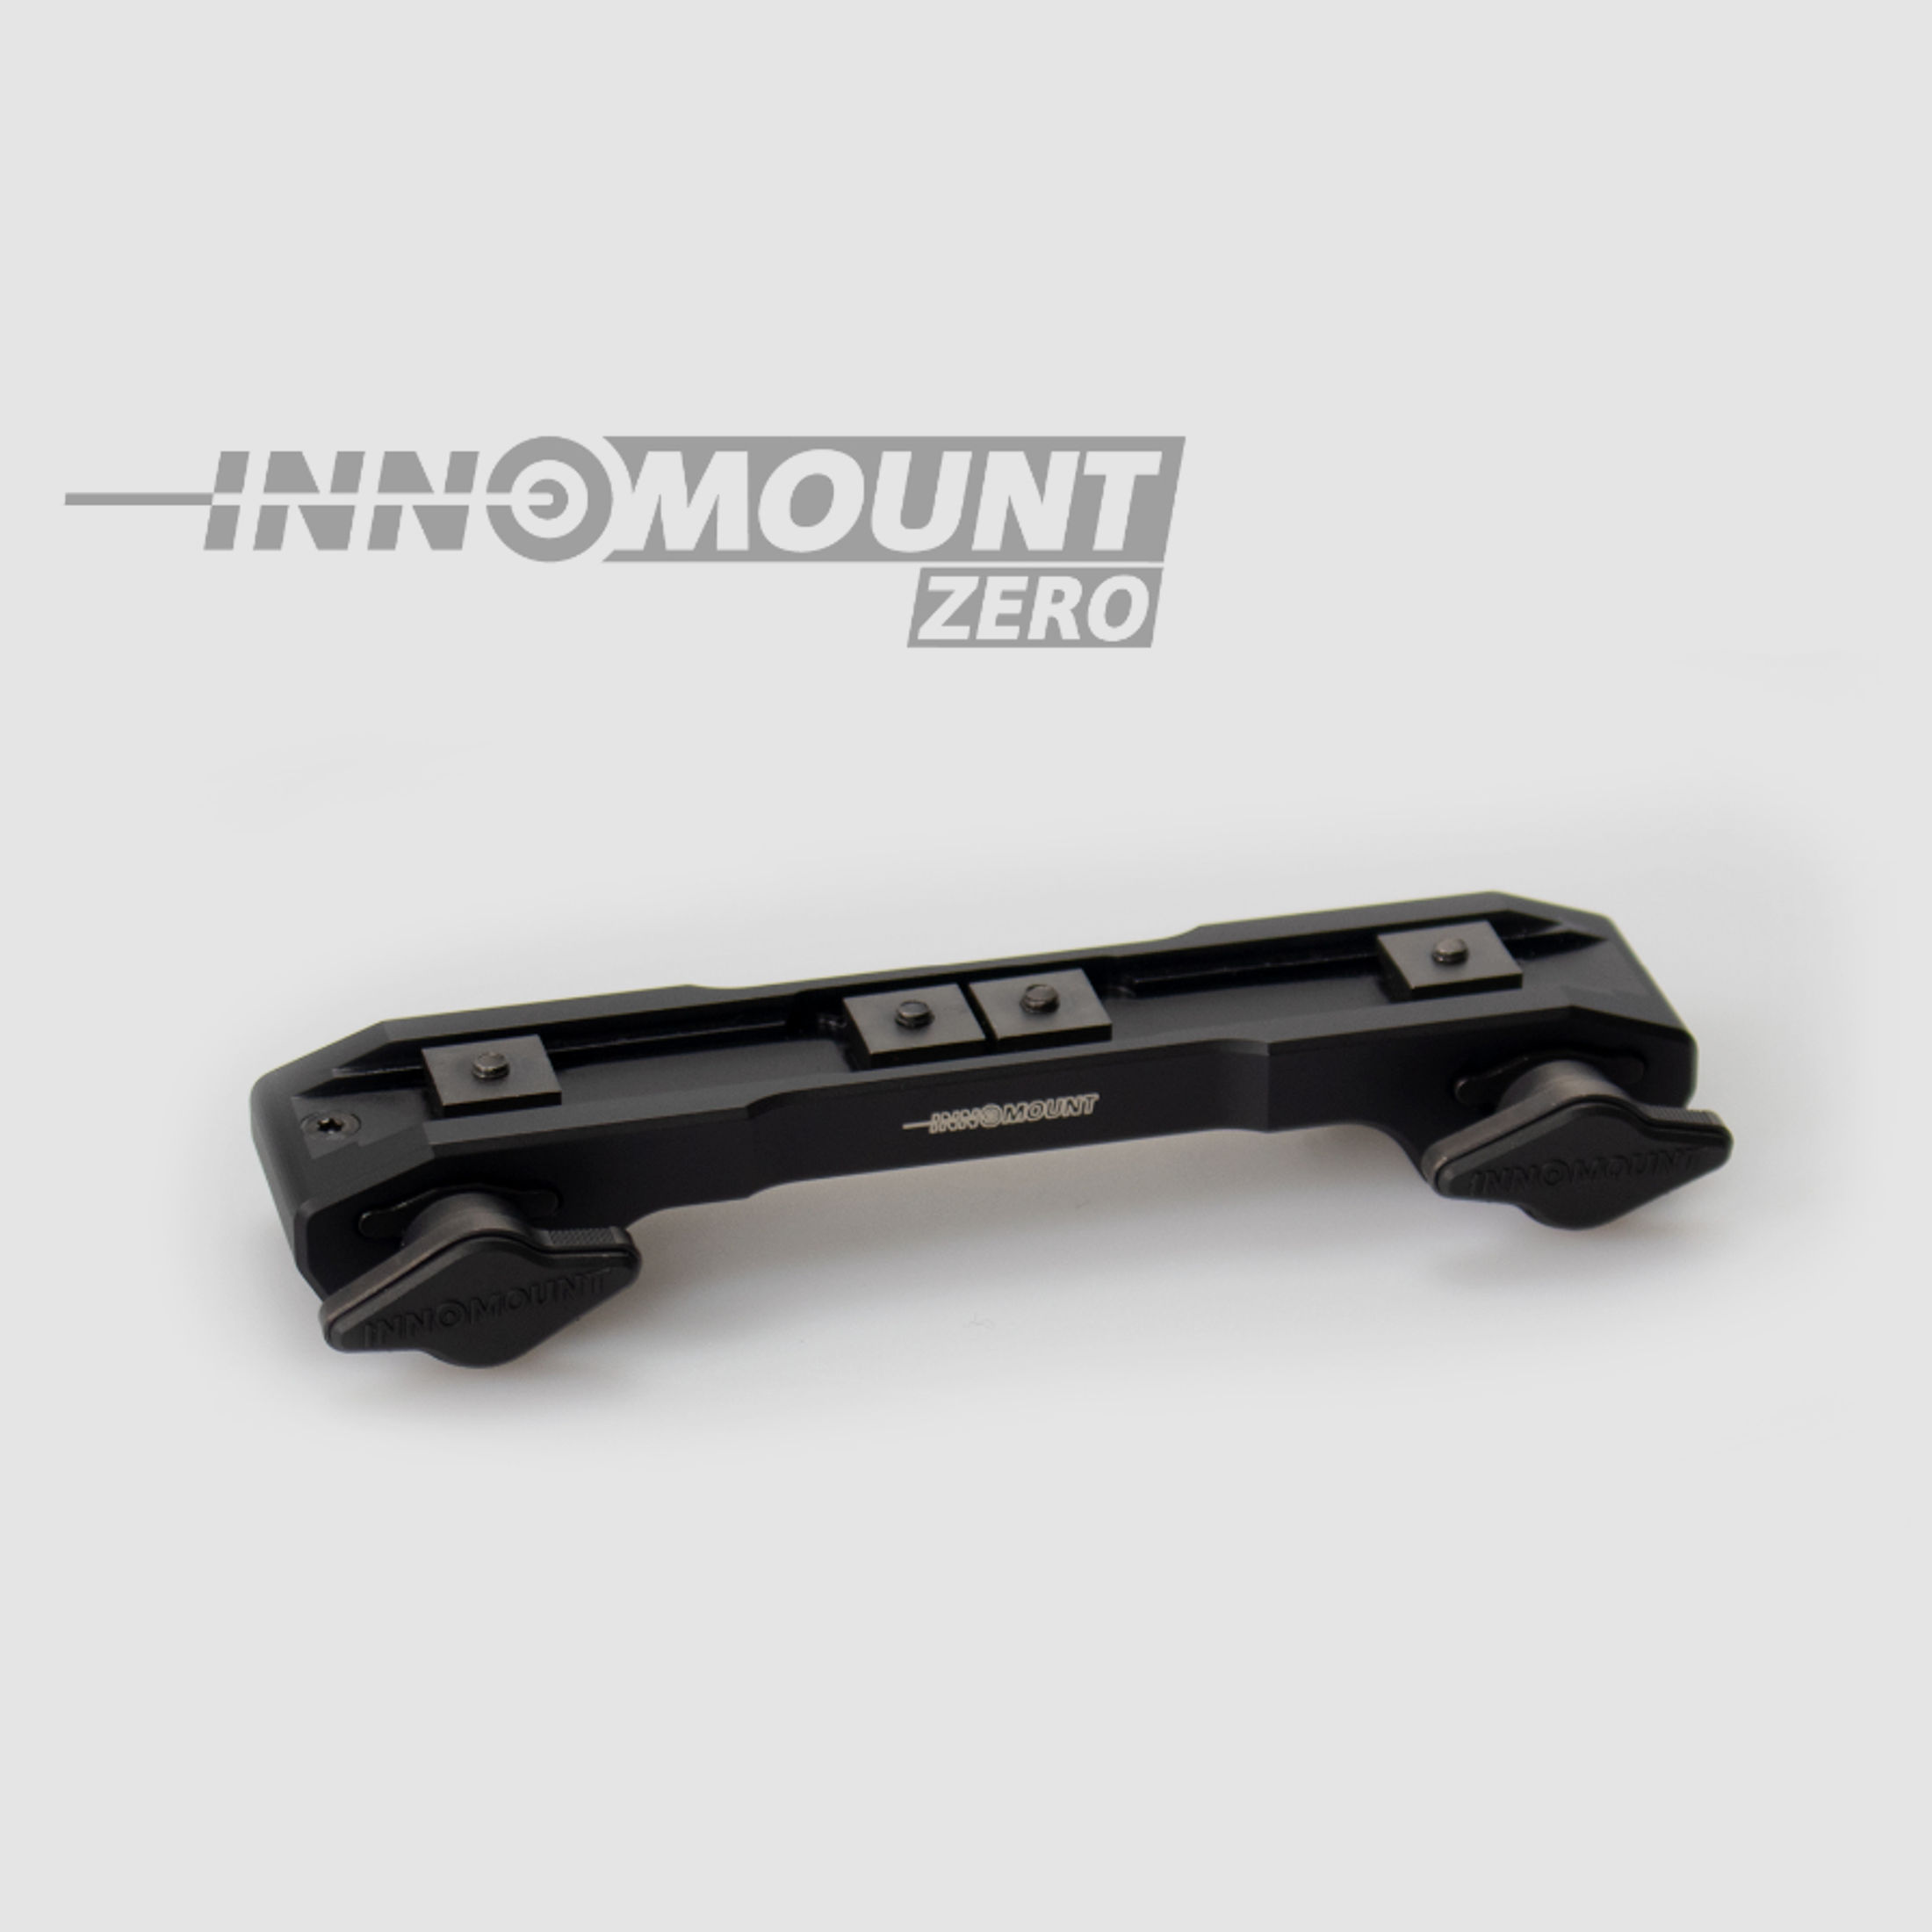 INNOMOUNT - Schnellspannmontage ZERO für Weaver/Picatinny Zeiss BH 7 mm